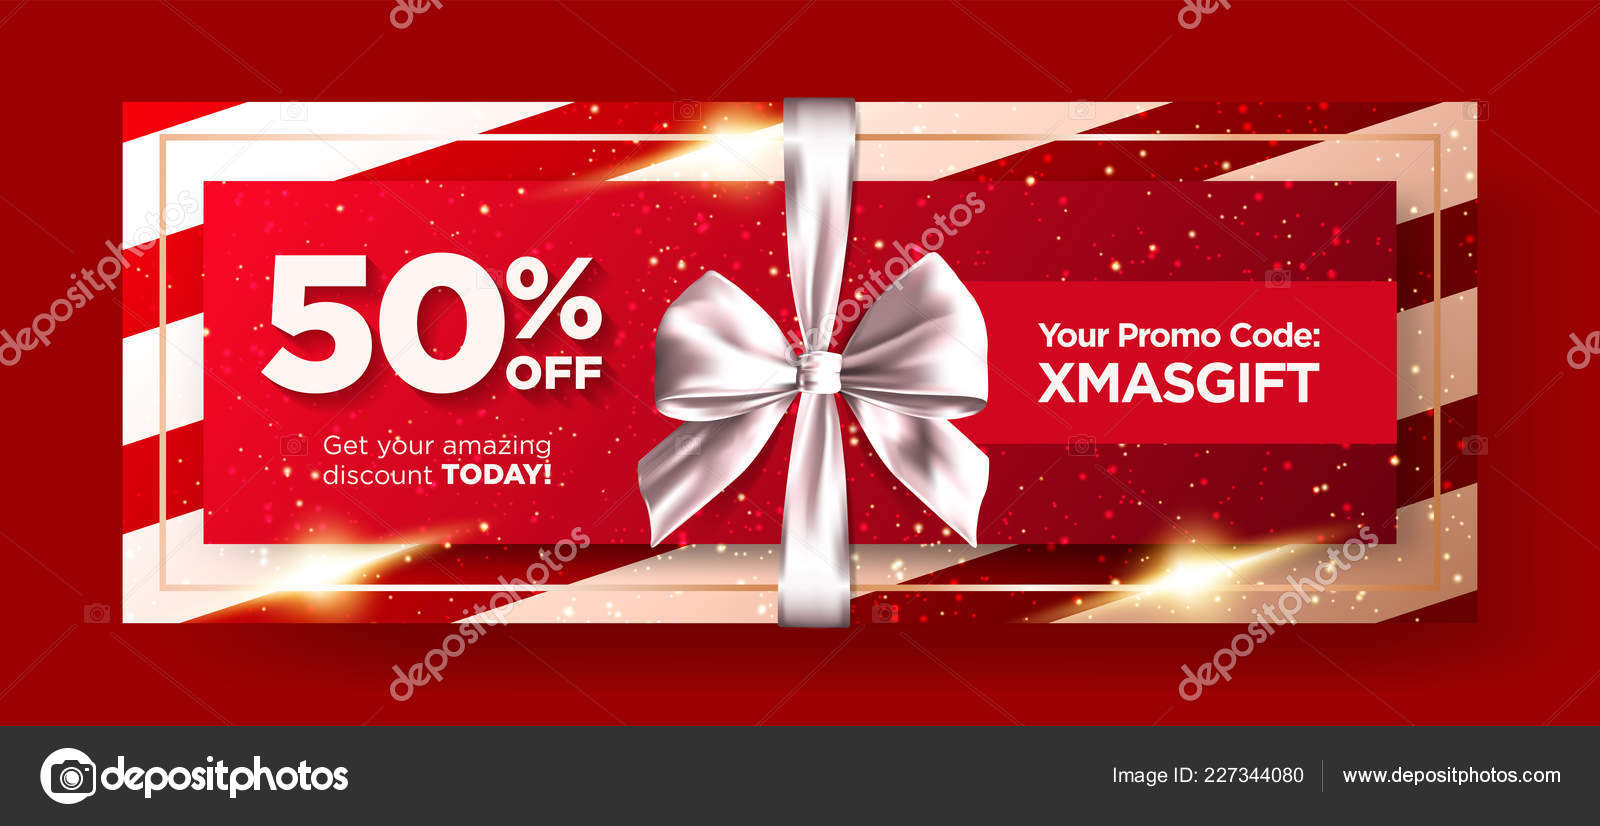 https://st4.depositphotos.com/10256212/22734/v/1600/depositphotos_227344080-stock-illustration-christmas-gift-voucher-xmas-gift.jpg